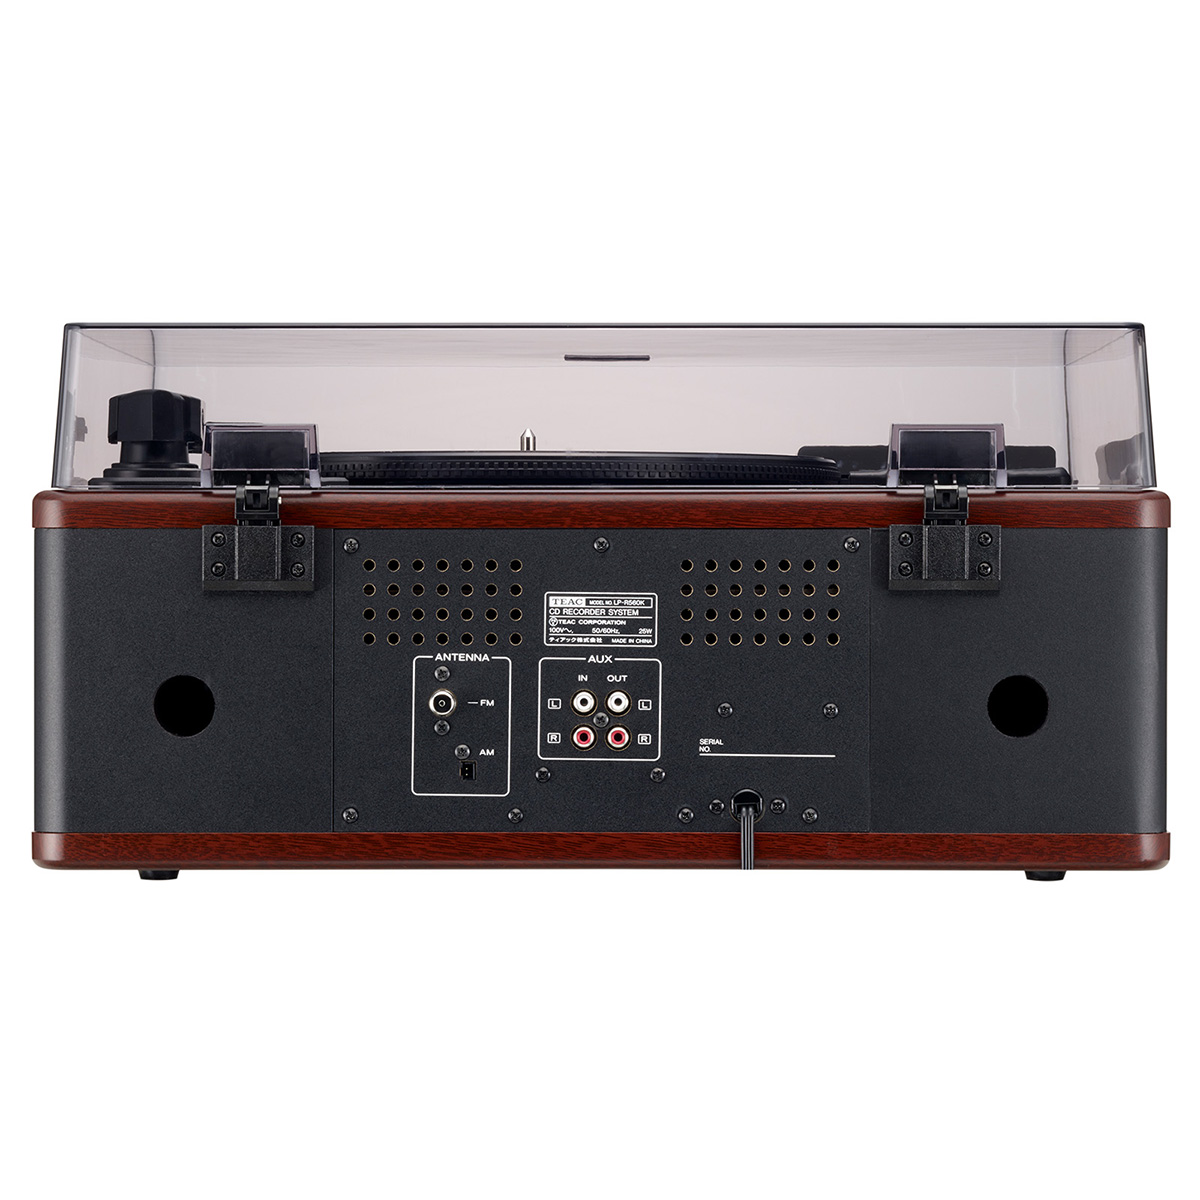 カラオケ機能付ターンテーブル/カセットプレーヤー付CDレコーダー